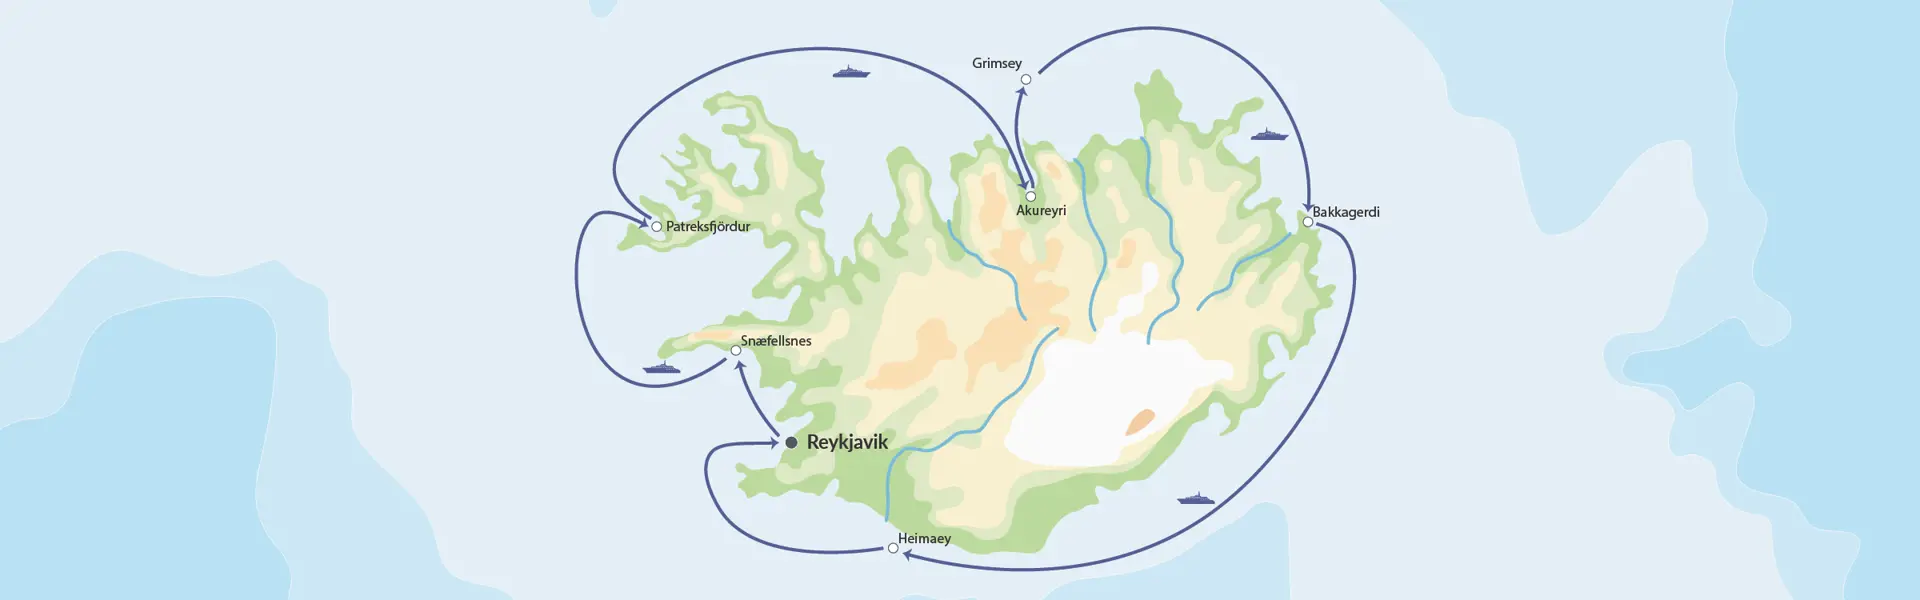 DK Hurtigruten Island Map